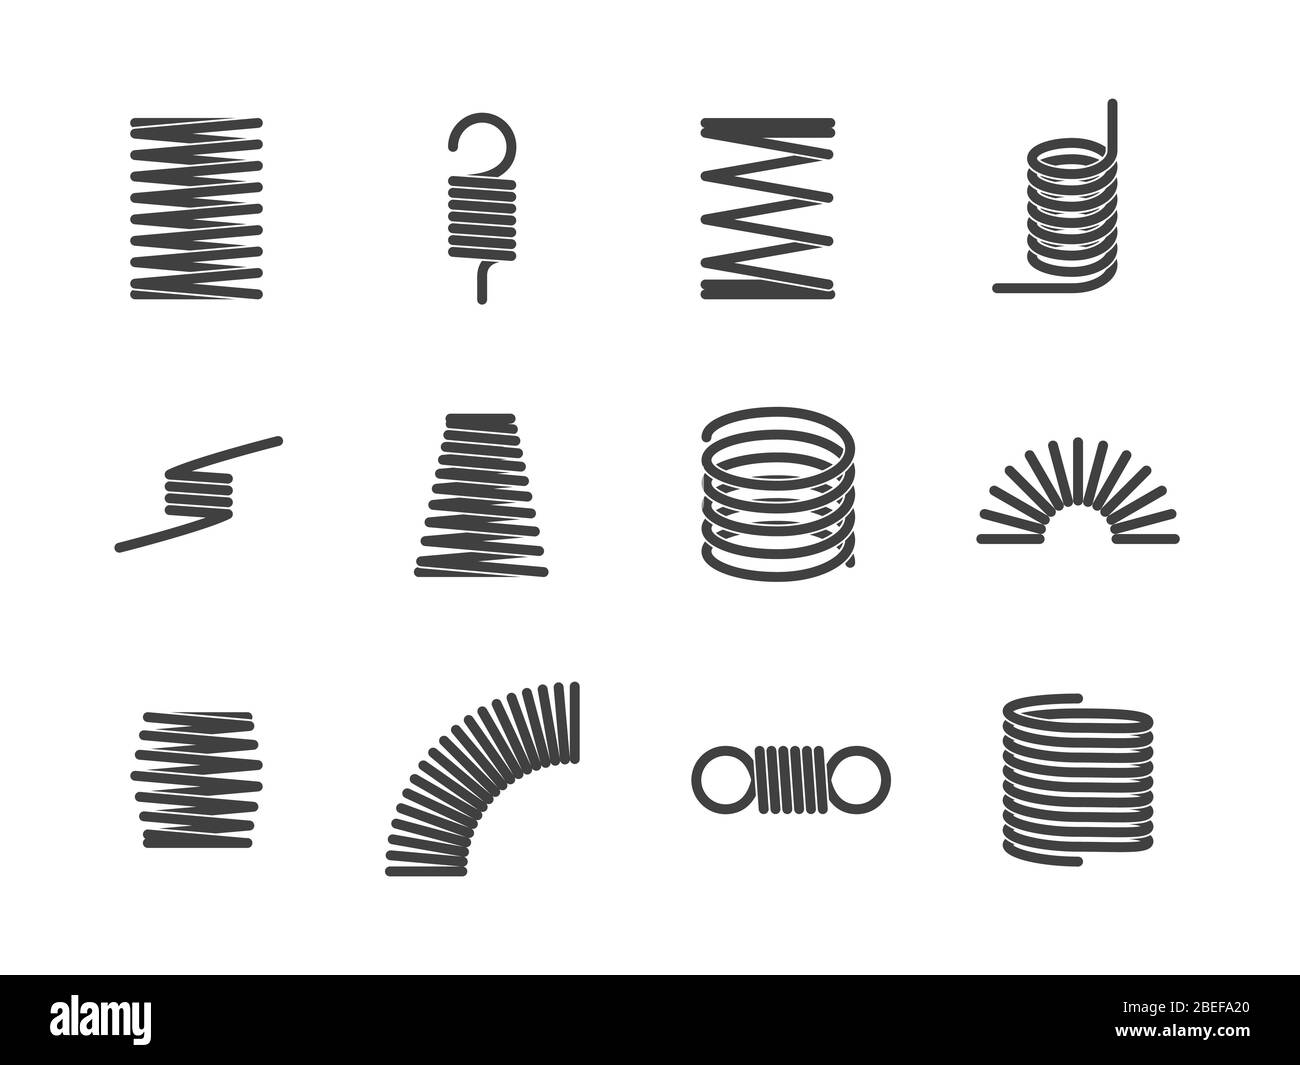 Espiral metálica flexible alambre elástico iconos de resorte aislados sobre fondo blanco. Ilustración vectorial Ilustración del Vector